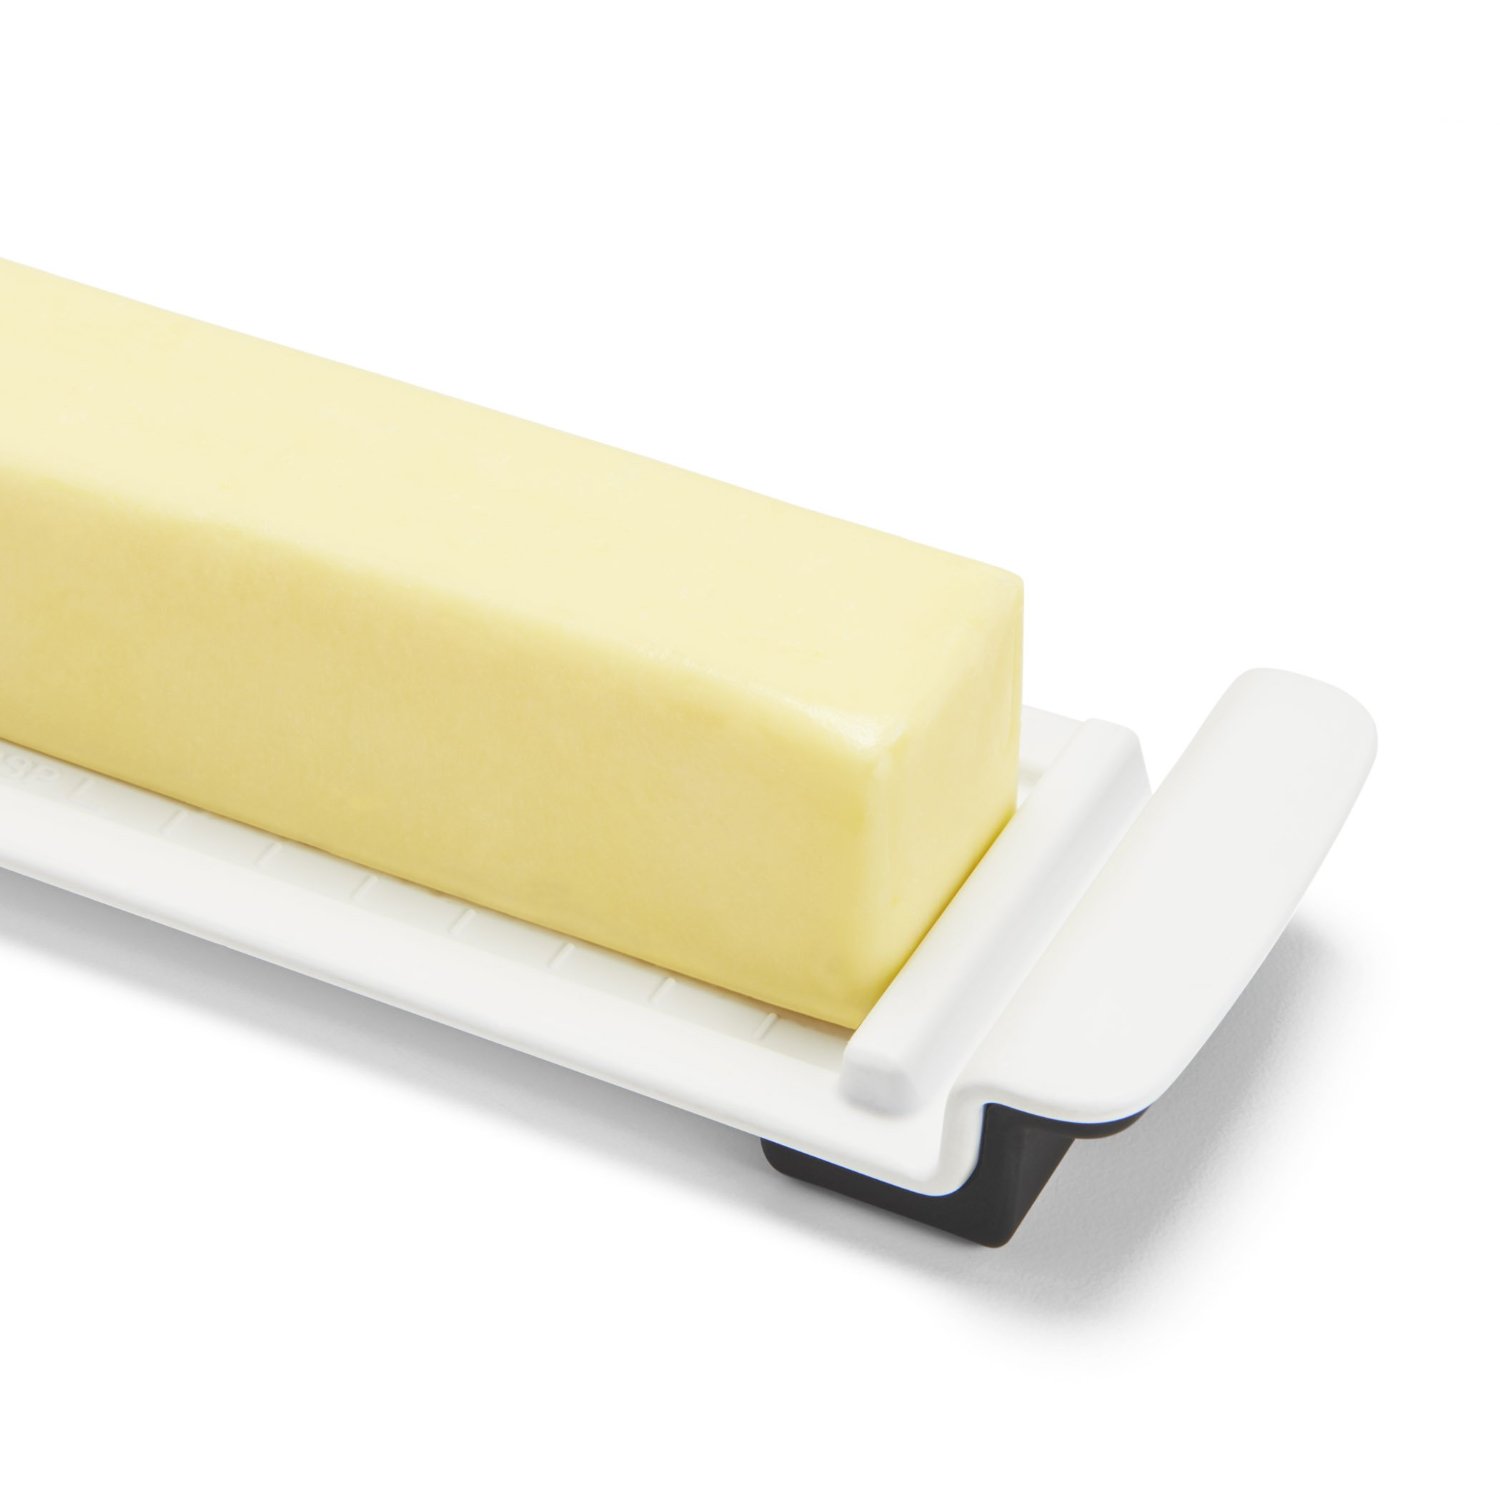 כלי לחמאה - OXO